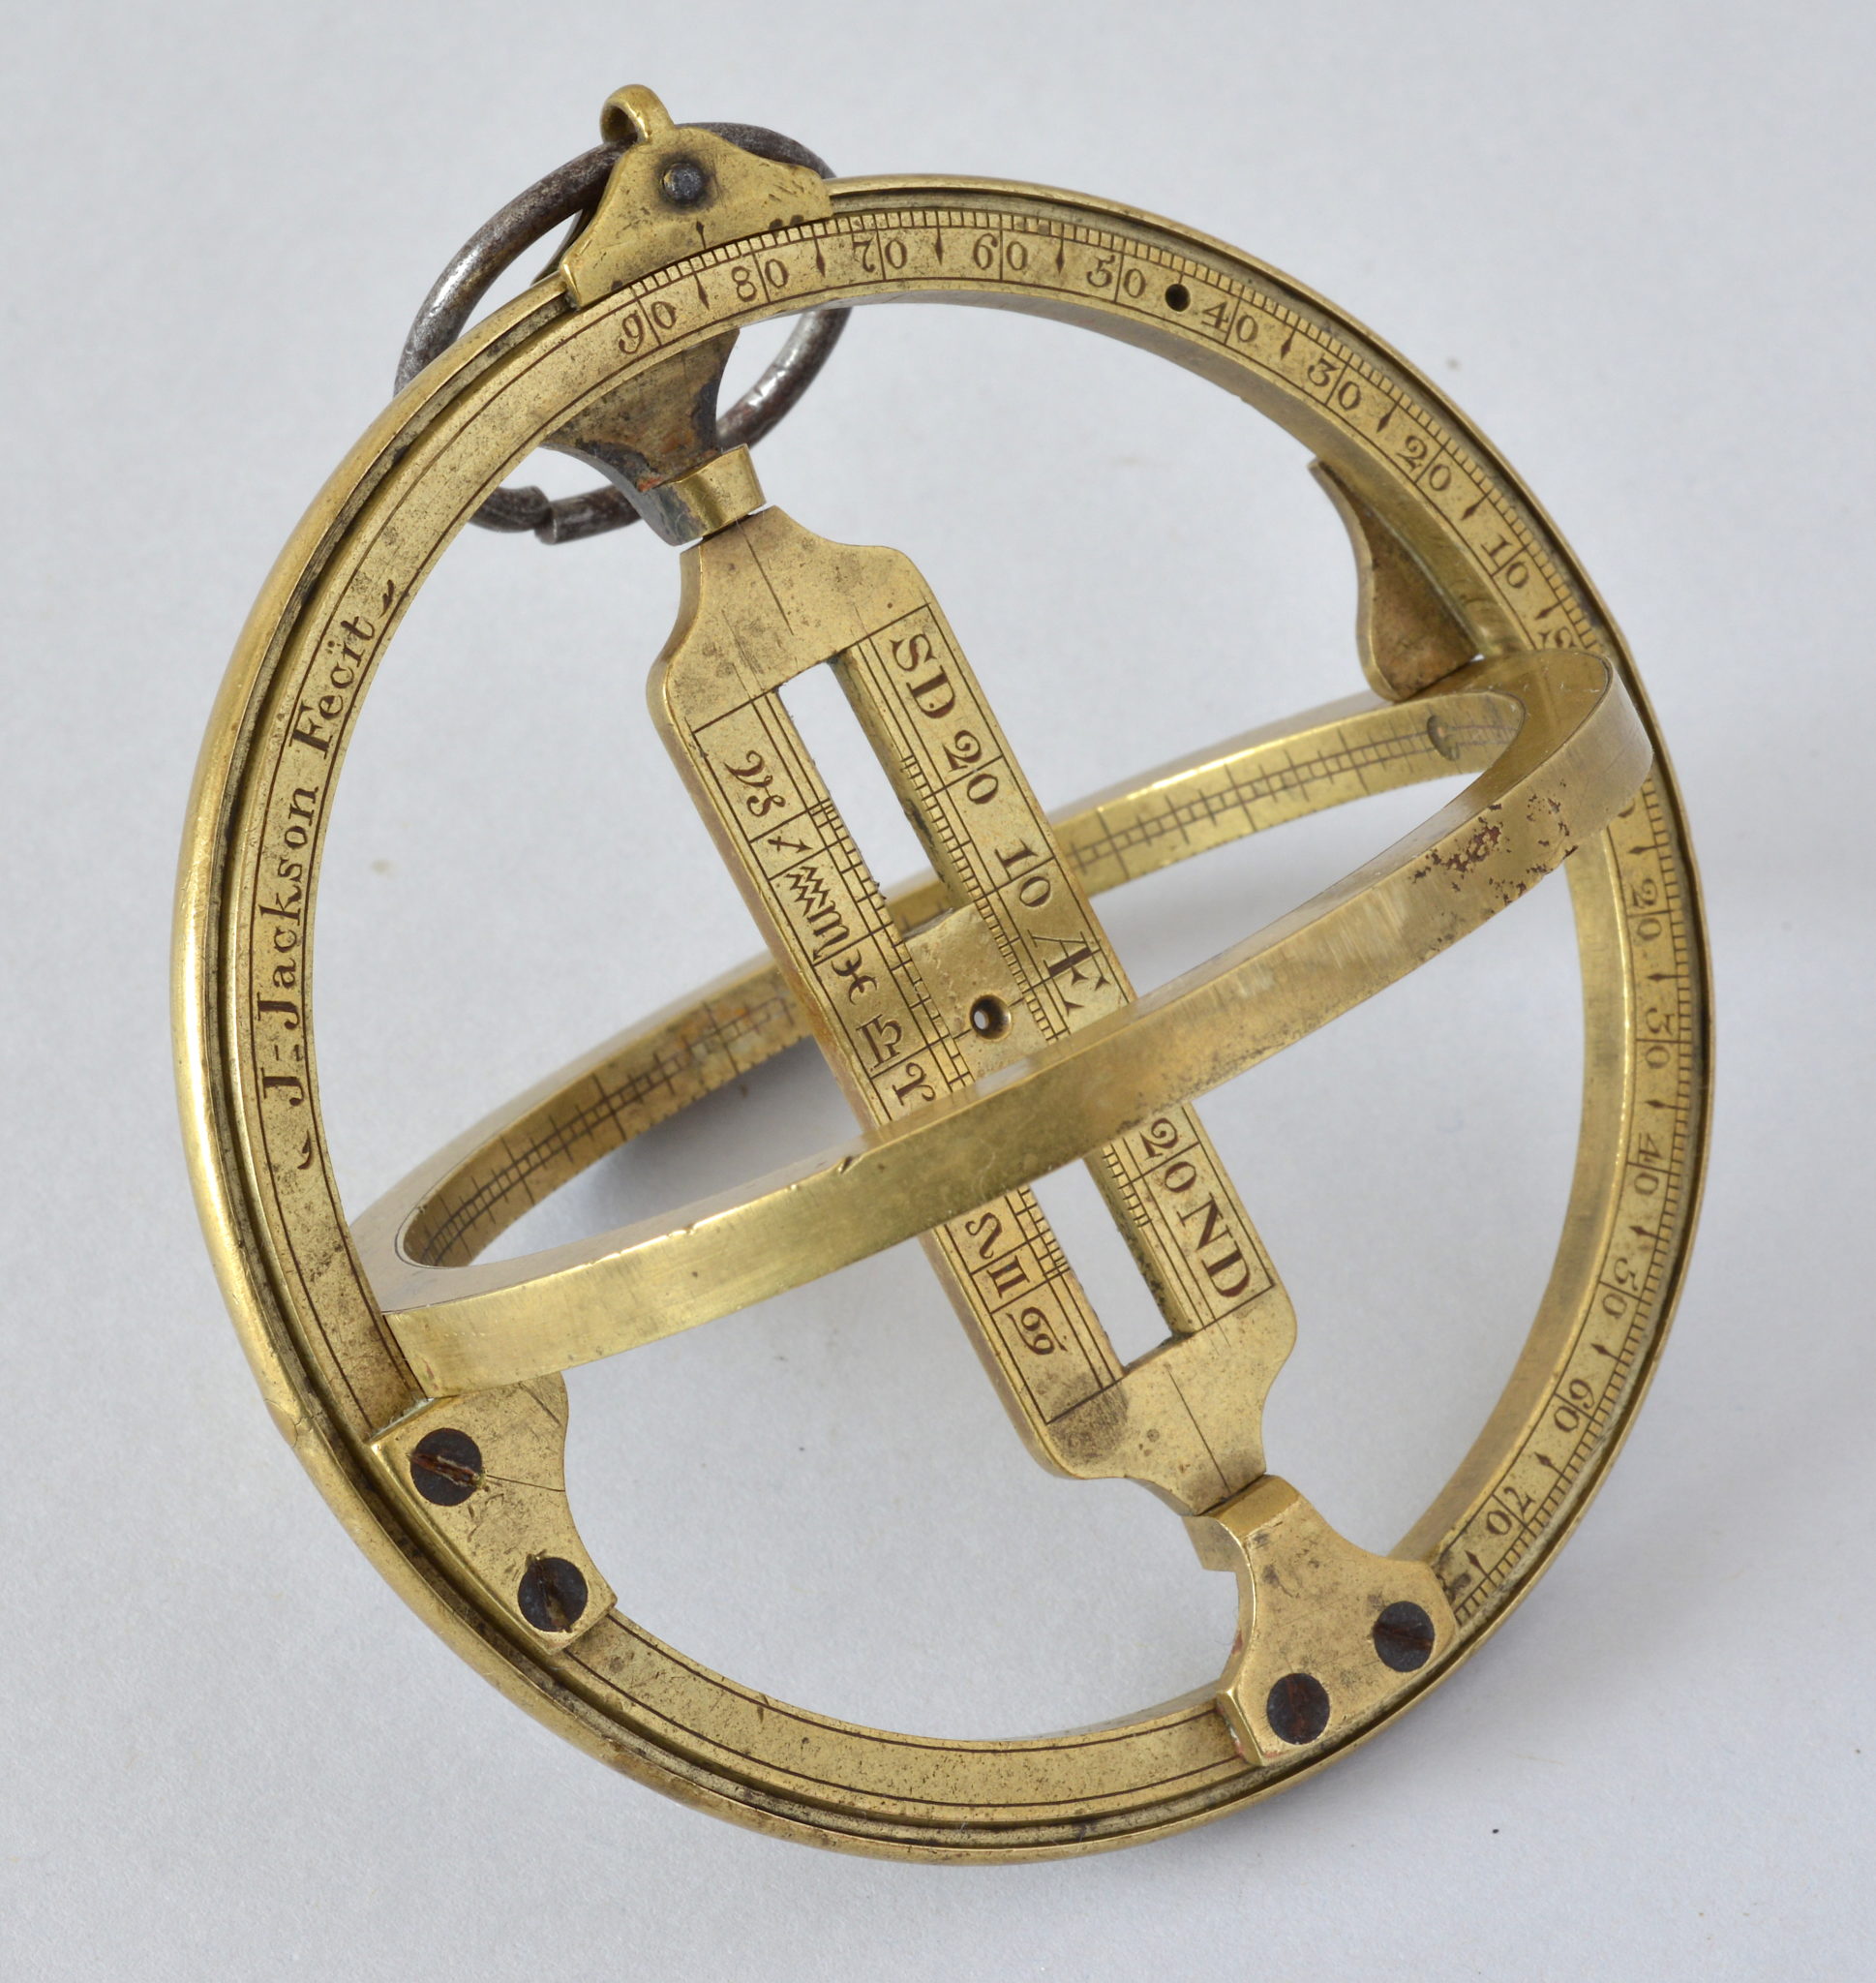 Brass equatorial ring signed J. (Joseph) Jackson Fecit made circa 1760